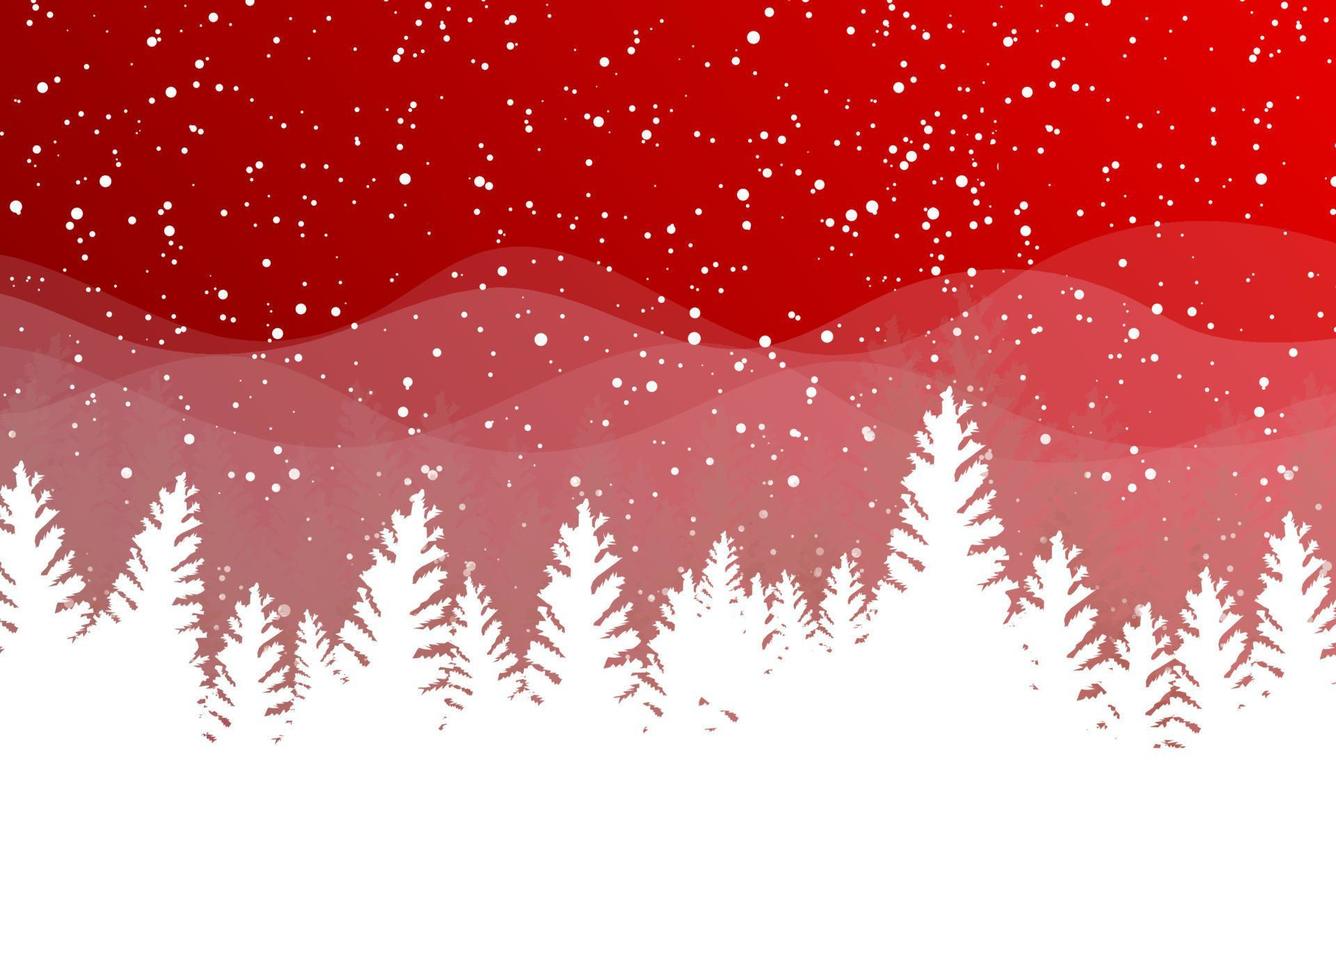 invierno de navidad sobre fondo rojo. nieve blanca con copos de nieve sobre luz plateada brillante. árbol de Navidad. vector